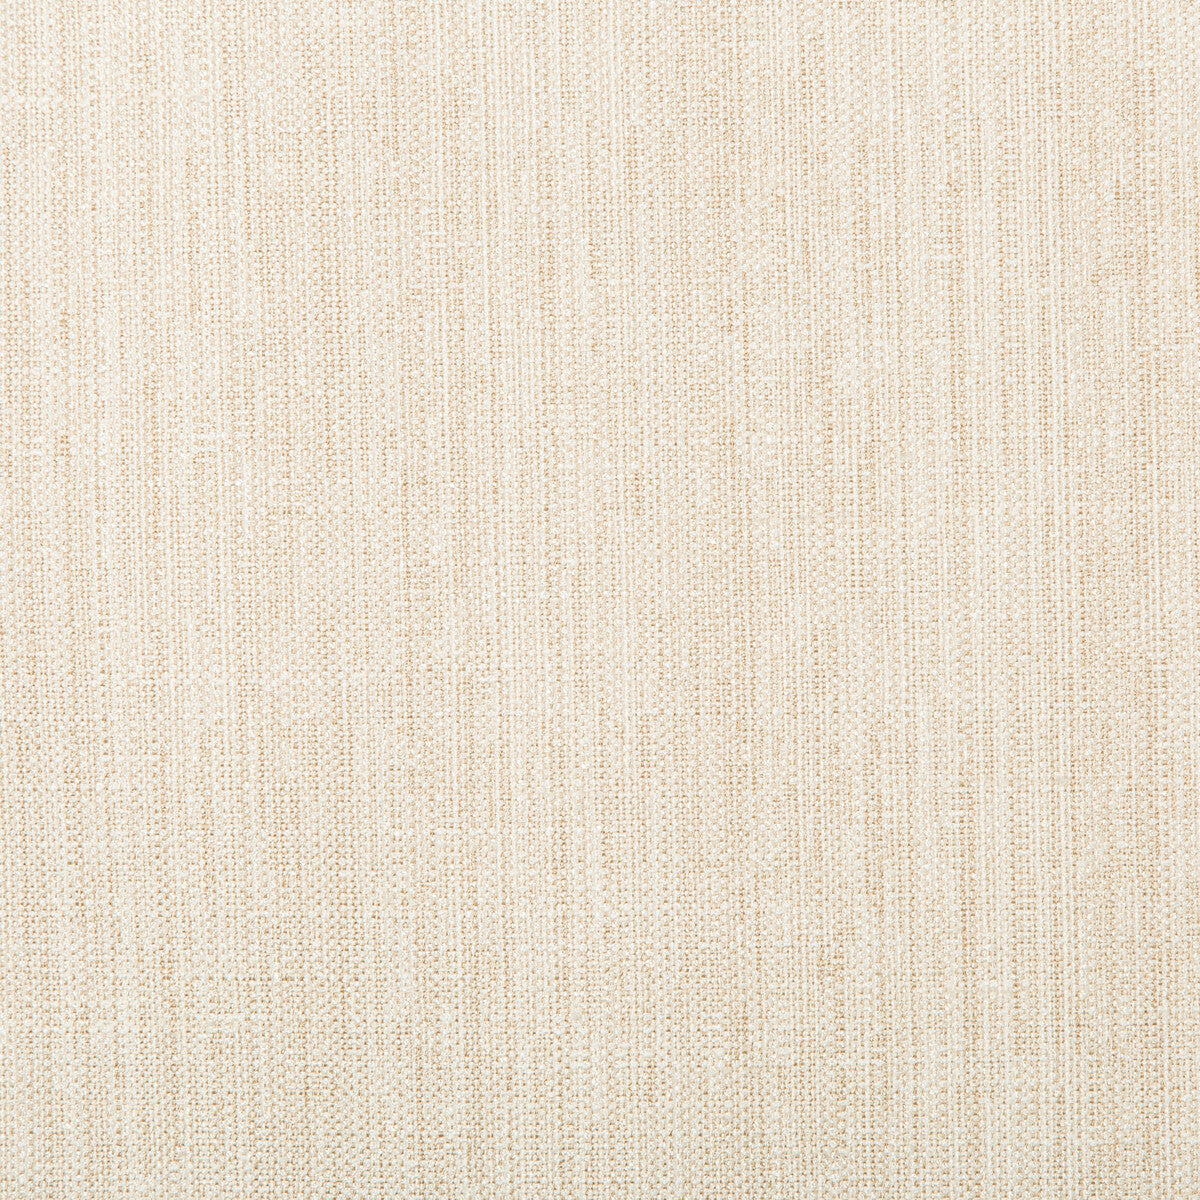 Kravet Basics fabric in 4665-1 color - pattern 4665.1.0 - by Kravet Basics